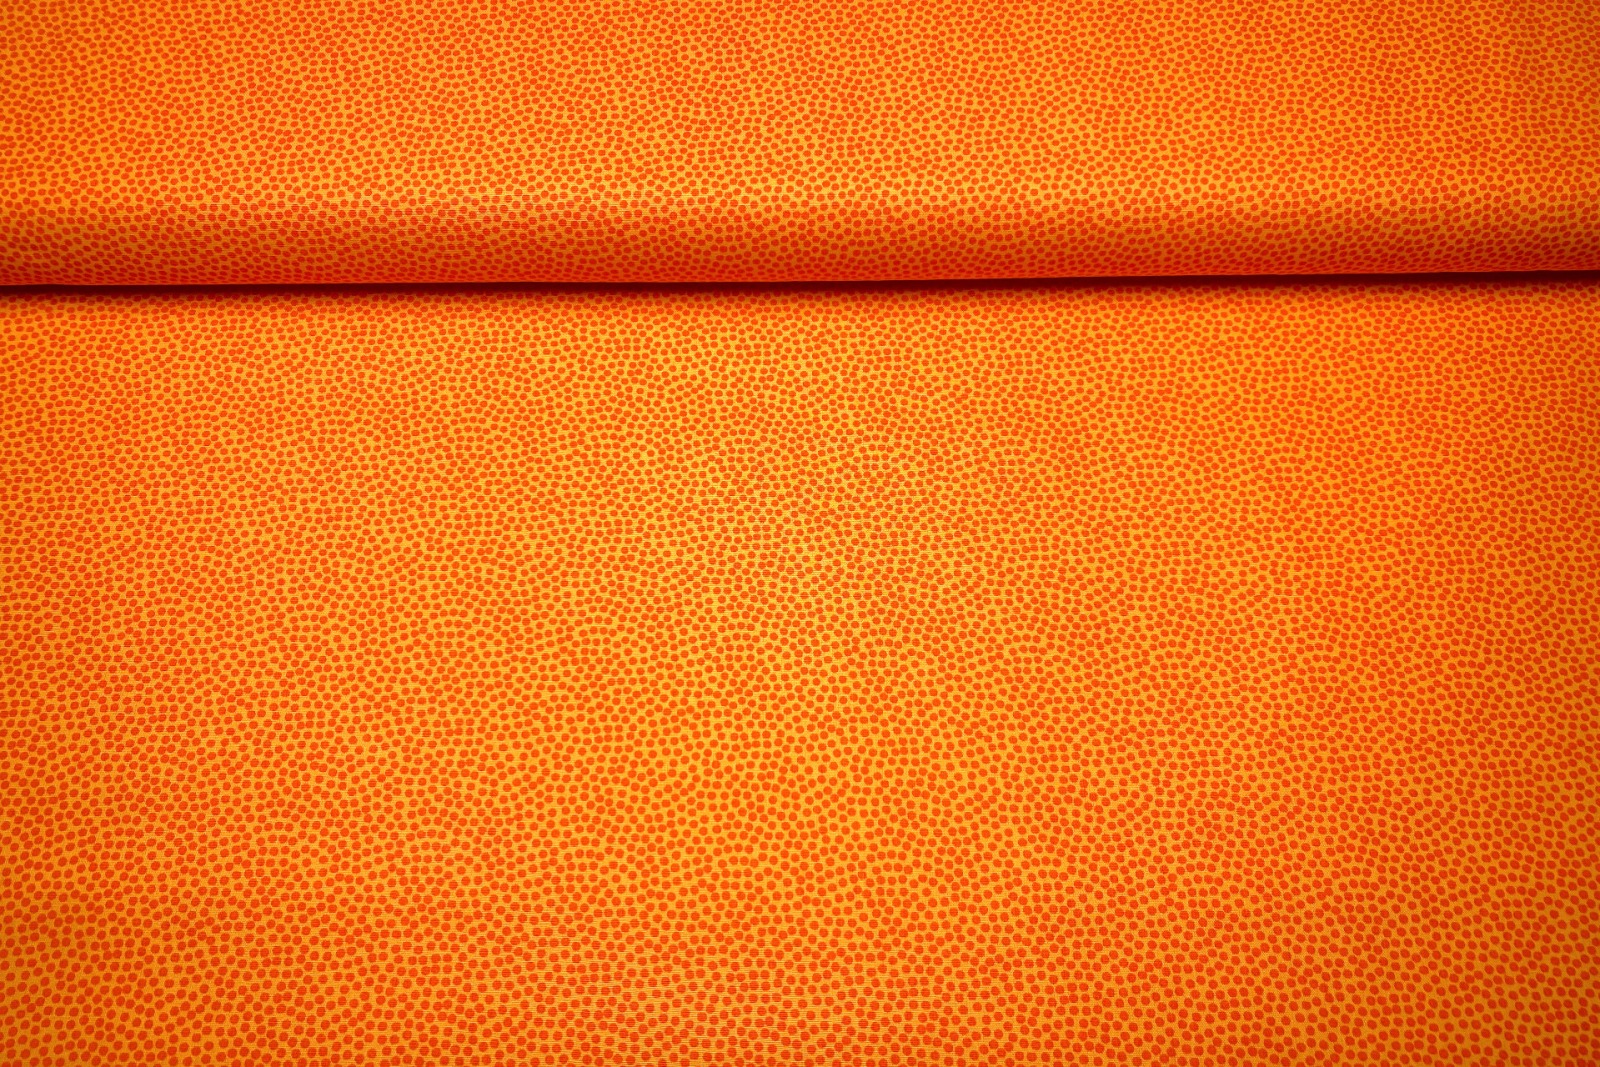 Baumwollwebware - unregelmäßige Punkte - gelb/orange | 11,00 EUR/m 2